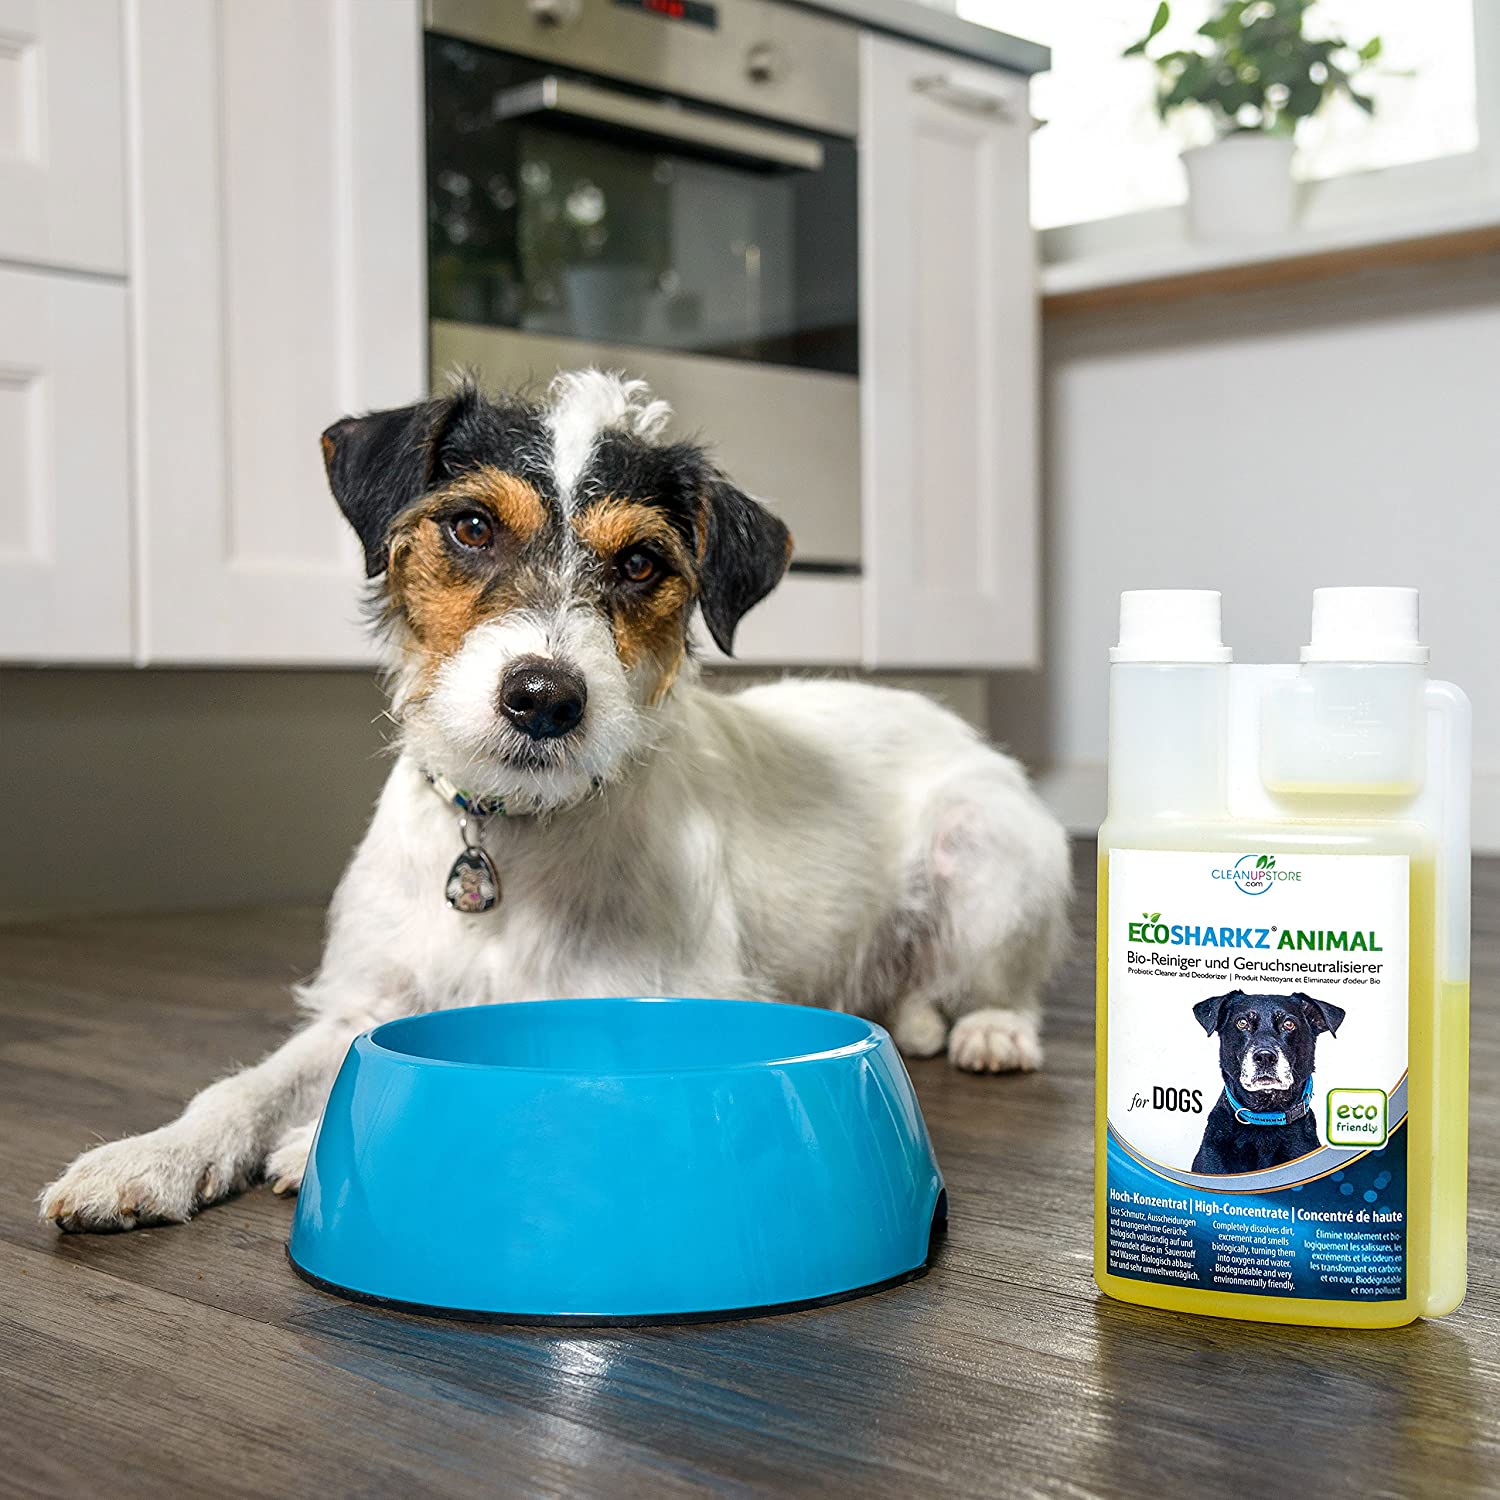  Ecosharkz neutralisant de mauvaises odeurs pour chiens - désodorisant naturel - concentré à haut débit pour éliminer l’odeur d’urine (jusqu'à 25L de solution nettoyante) 